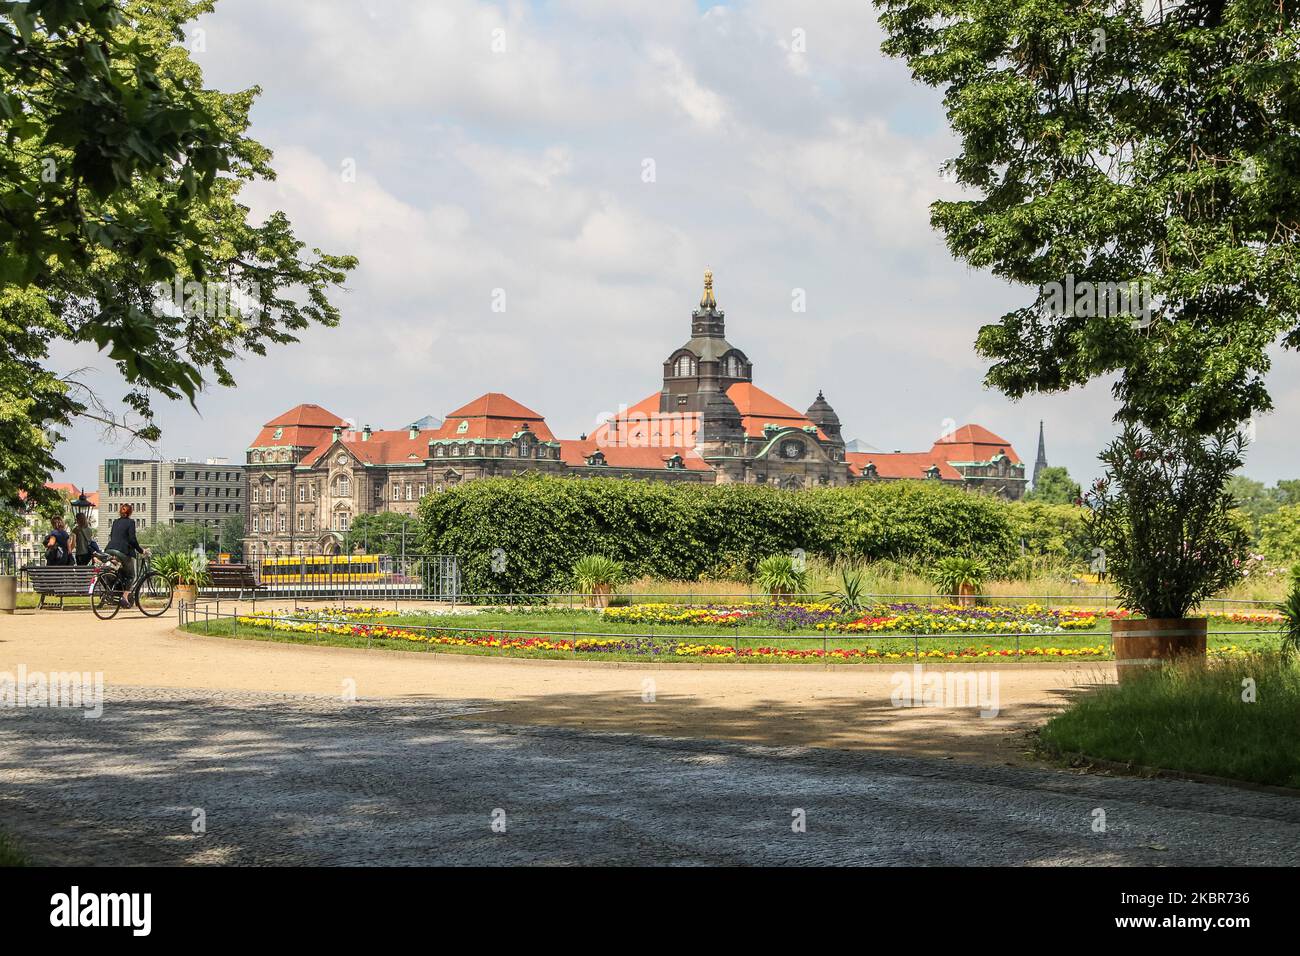 Quasi vuoto a causa della mancanza di turismo correlata al Covid-19, la vecchia strada della città è vista a Dresda, Germania il 11 giugno 2020 (Foto di Michal Fludra/NurPhoto) Foto Stock